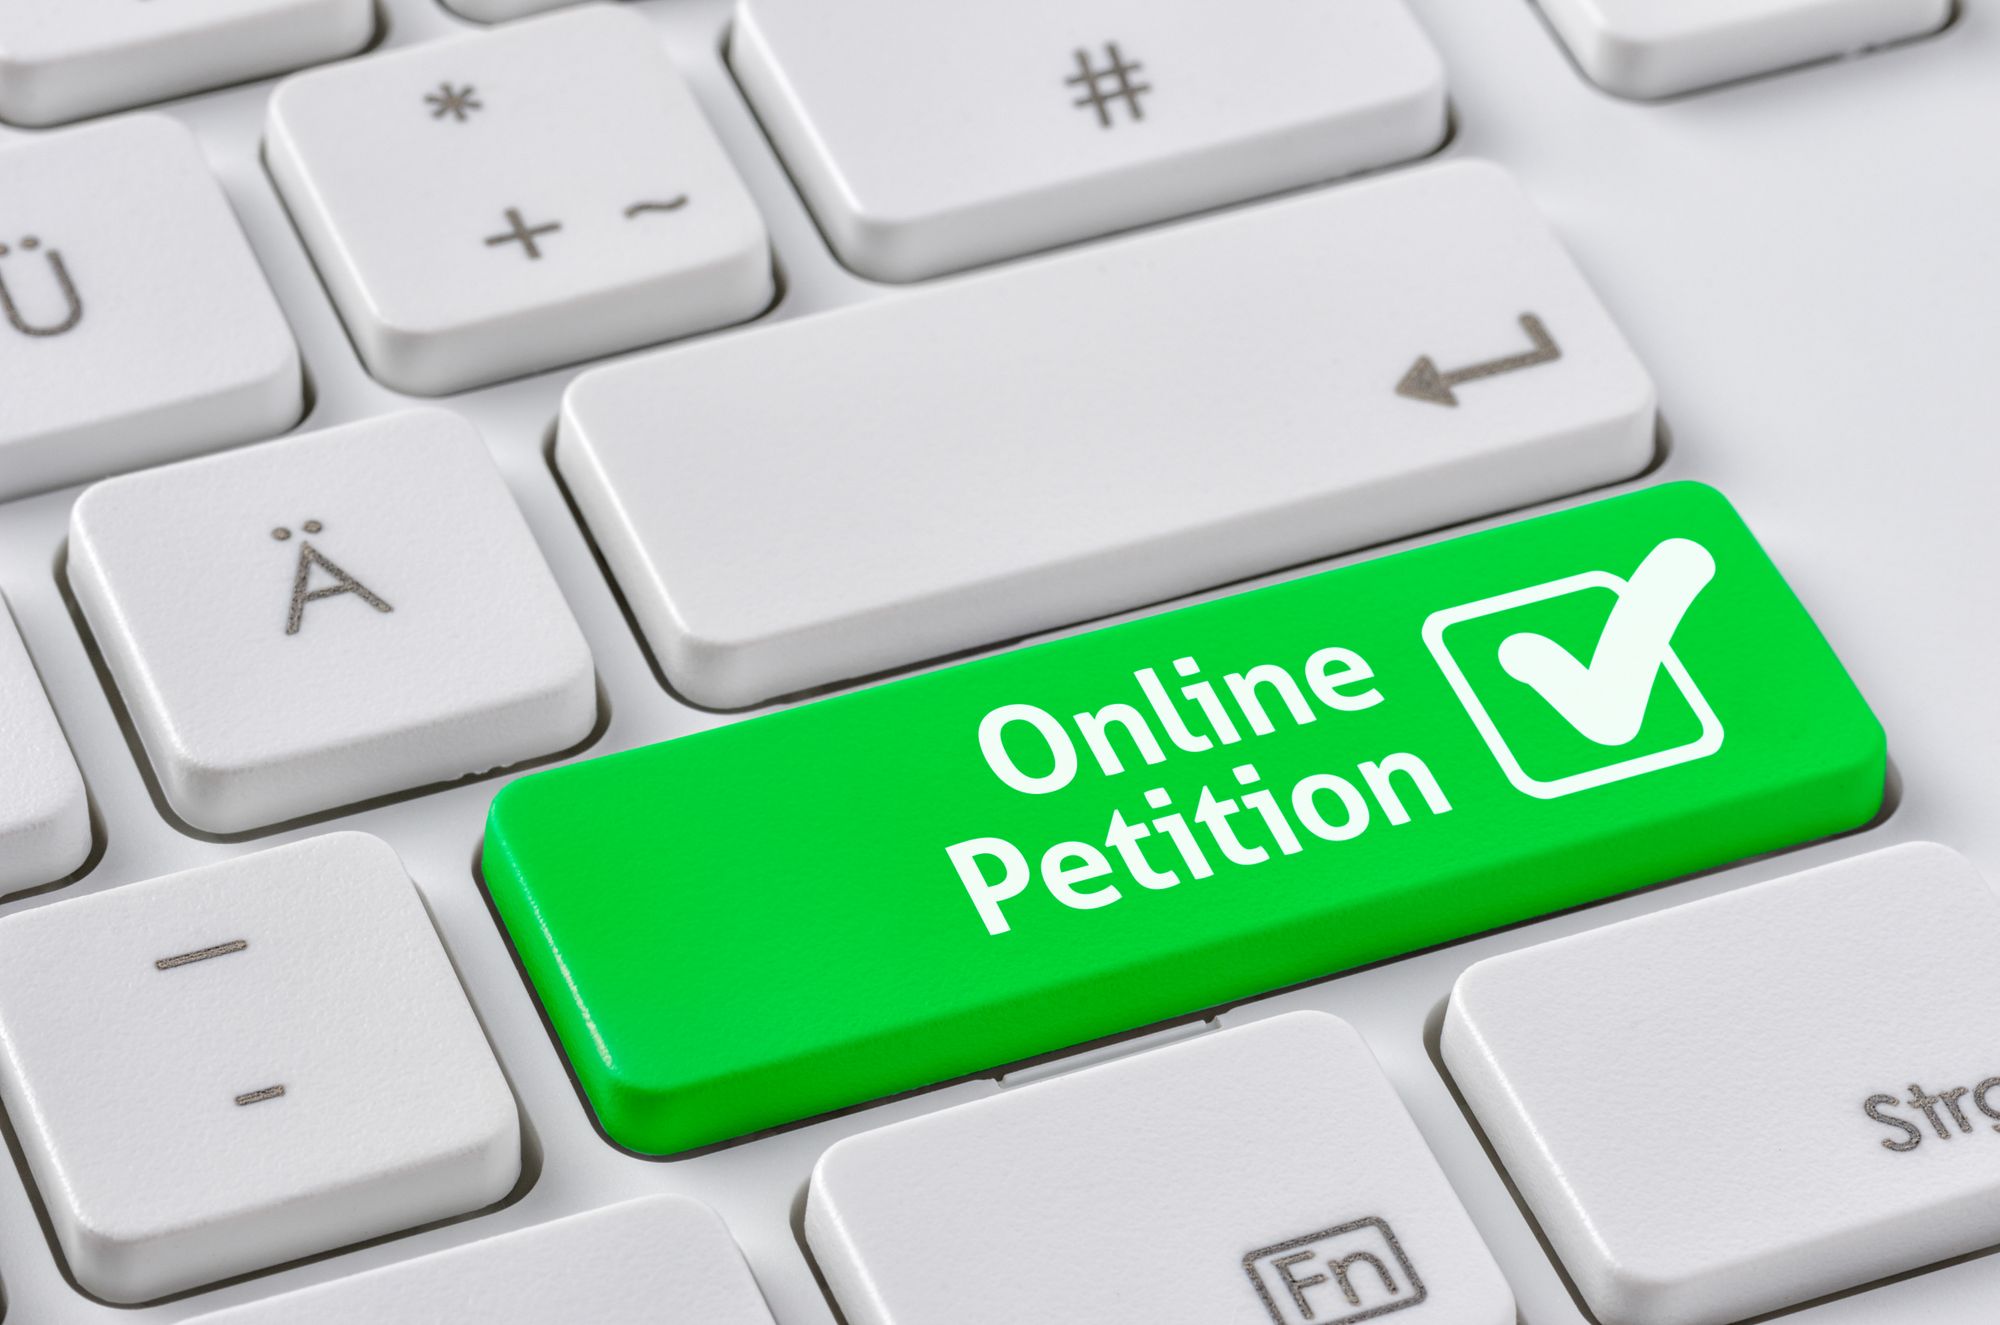 Онлайн-петиция құралын іске асыру